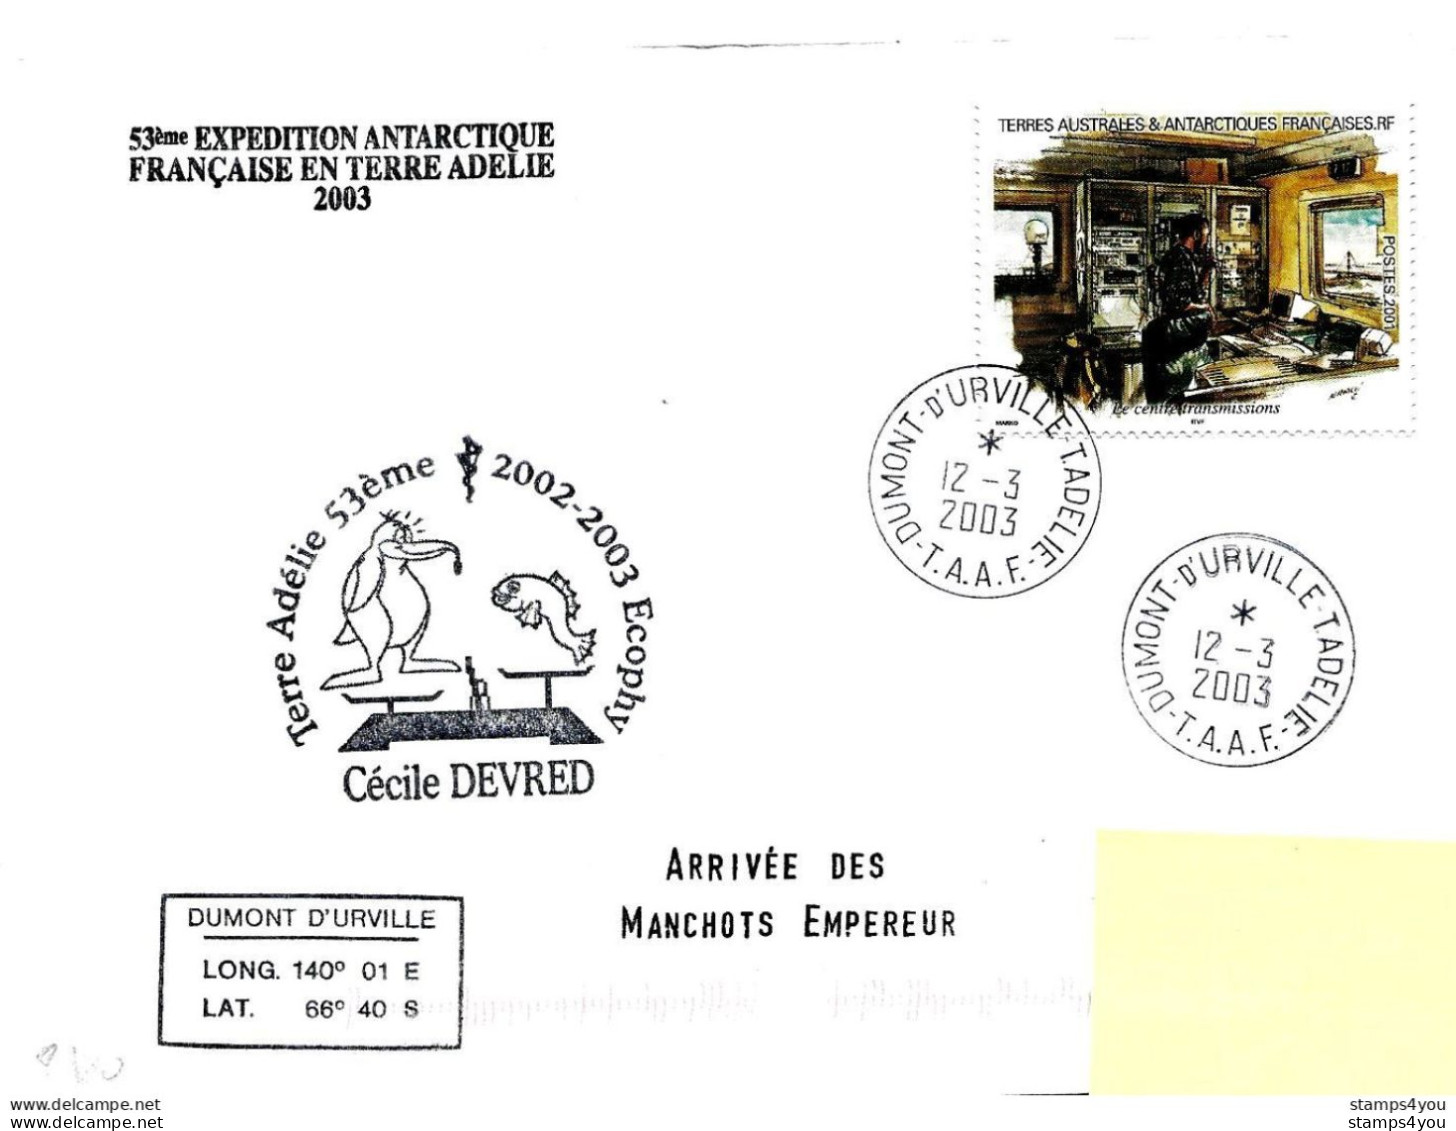 229 - 16 - Enveloppe TAAF Terre Adélie "arrivée Manchots 2003" - Timbre Tiré Carnet De Voyage - Bases Antarctiques